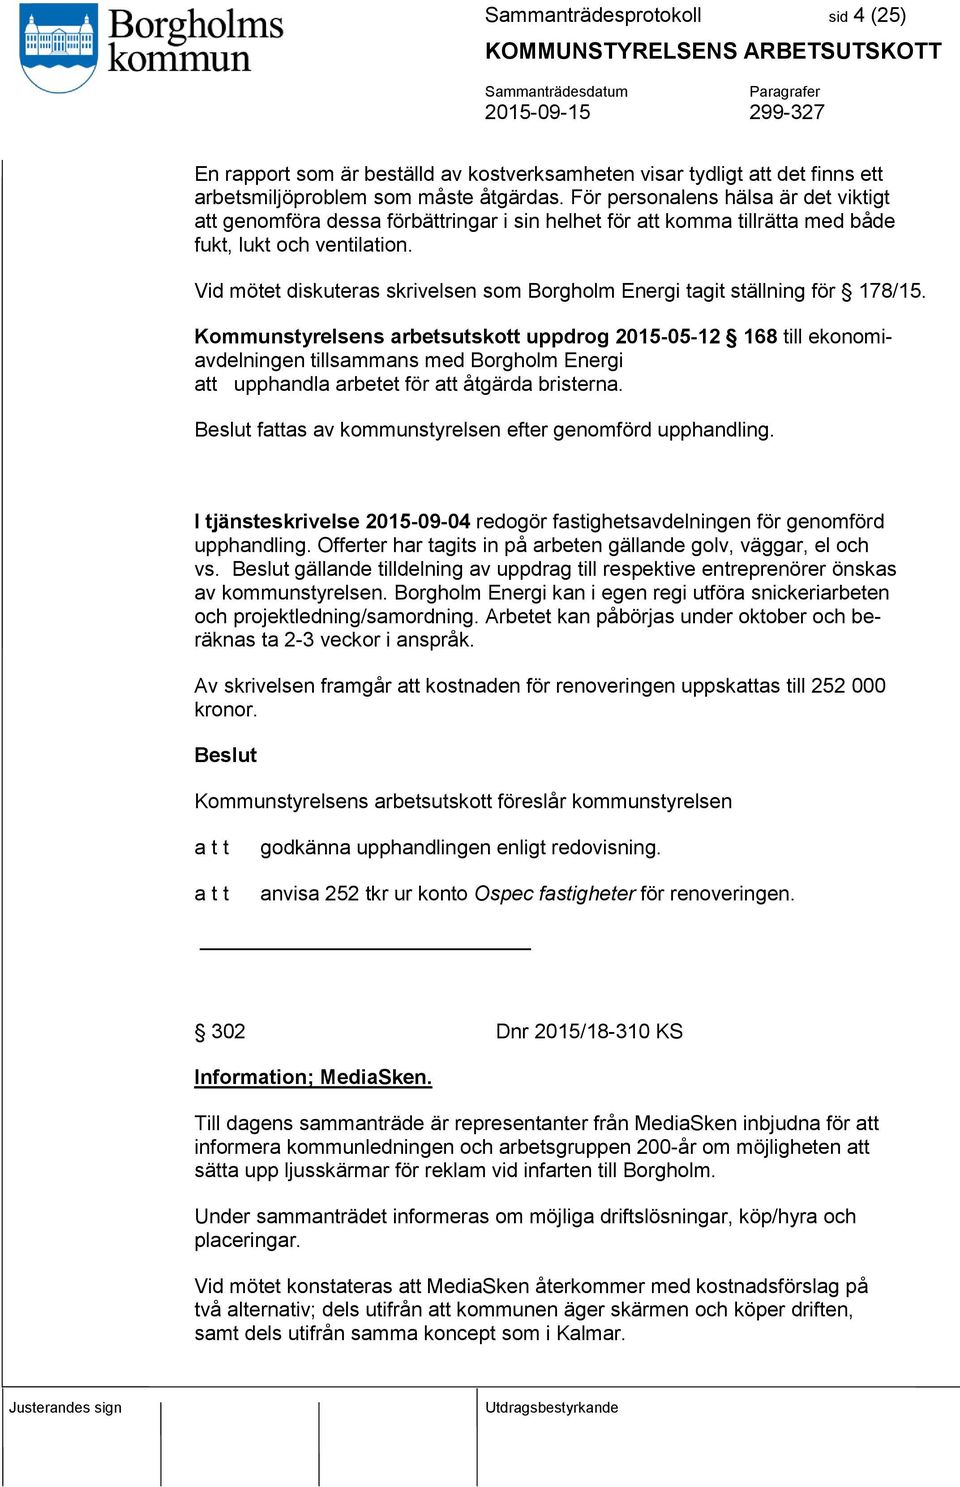 Vid mötet diskuteras skrivelsen som Borgholm Energi tagit ställning för 178/15.